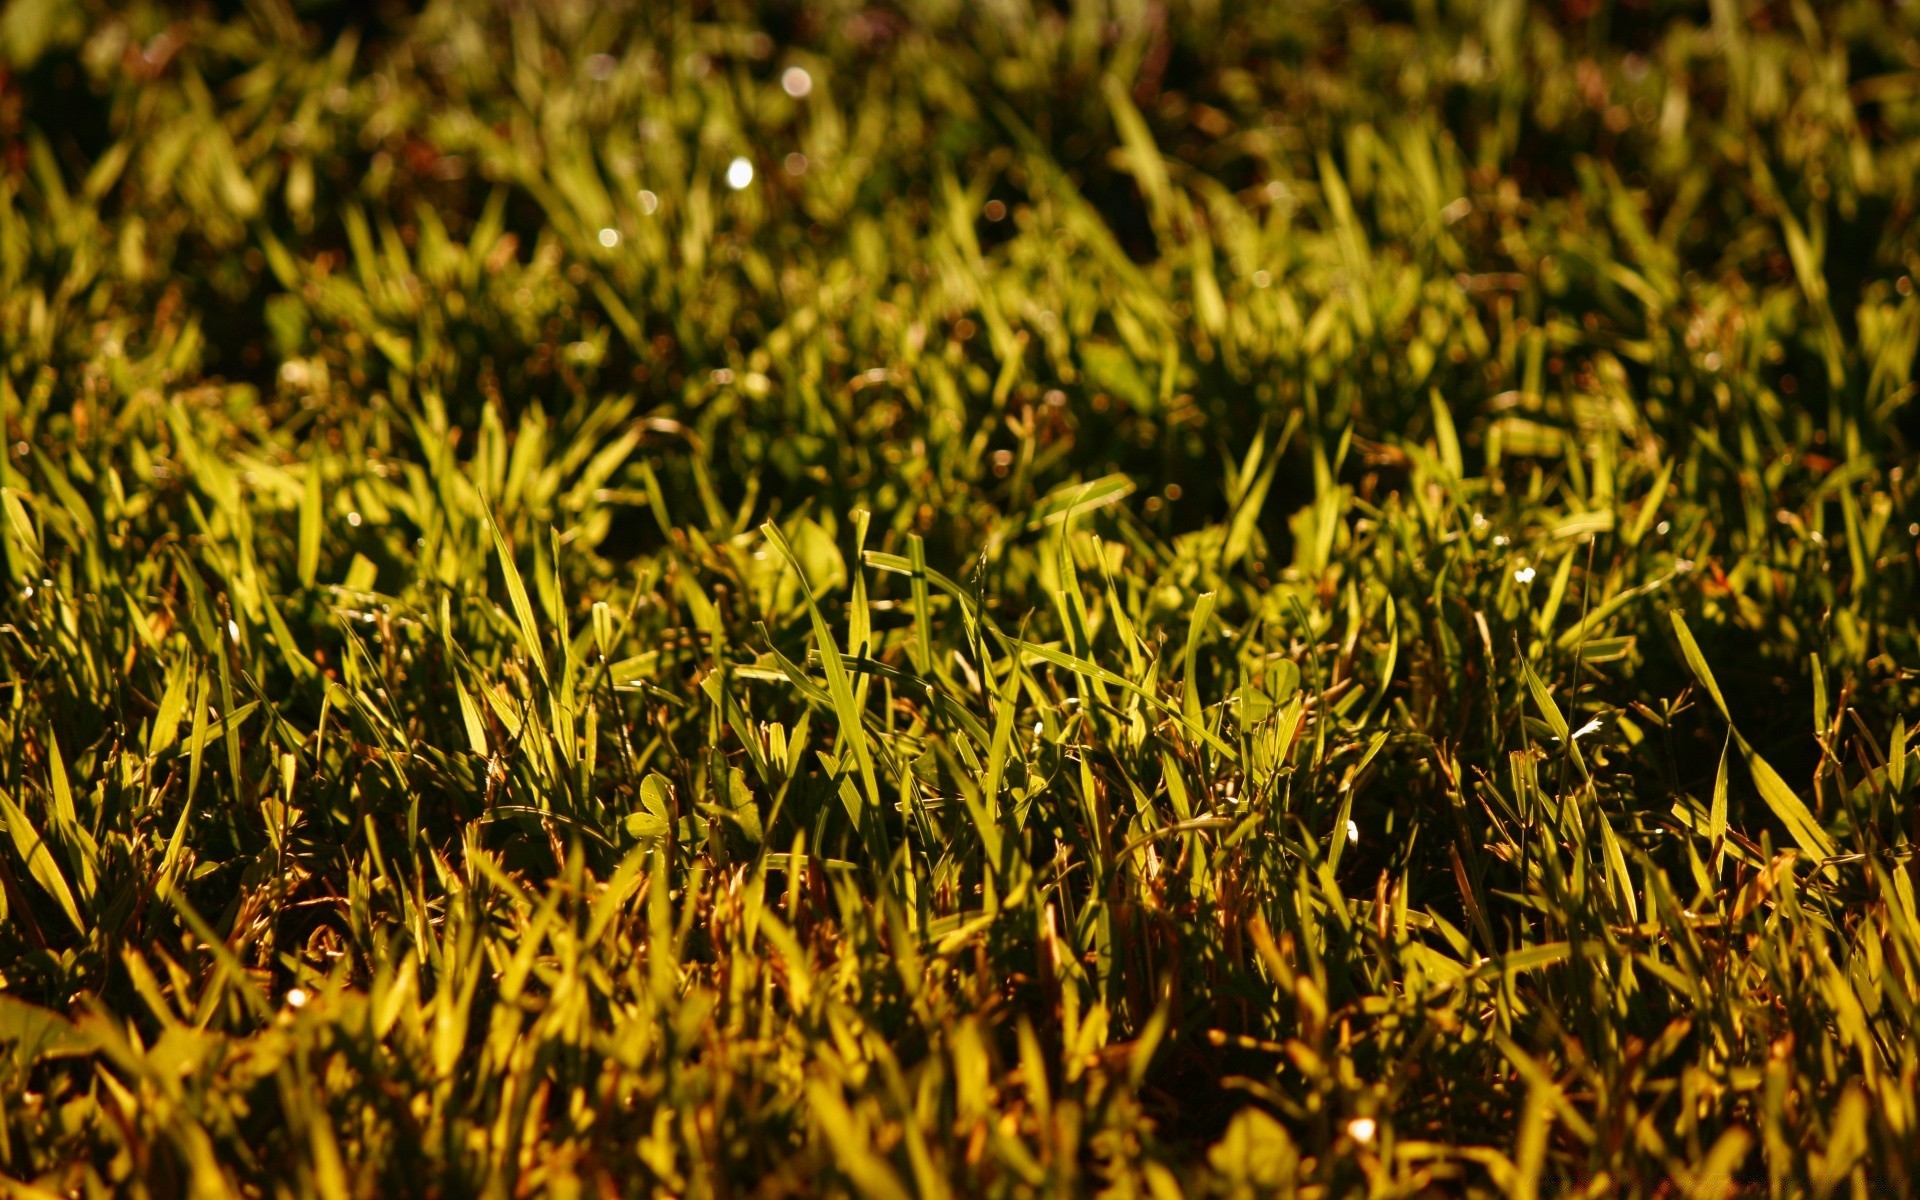 bokeh grass growth flora nature ground field soil desktop leaf texture outdoors close-up agriculture dawn lawn environment garden summer farm